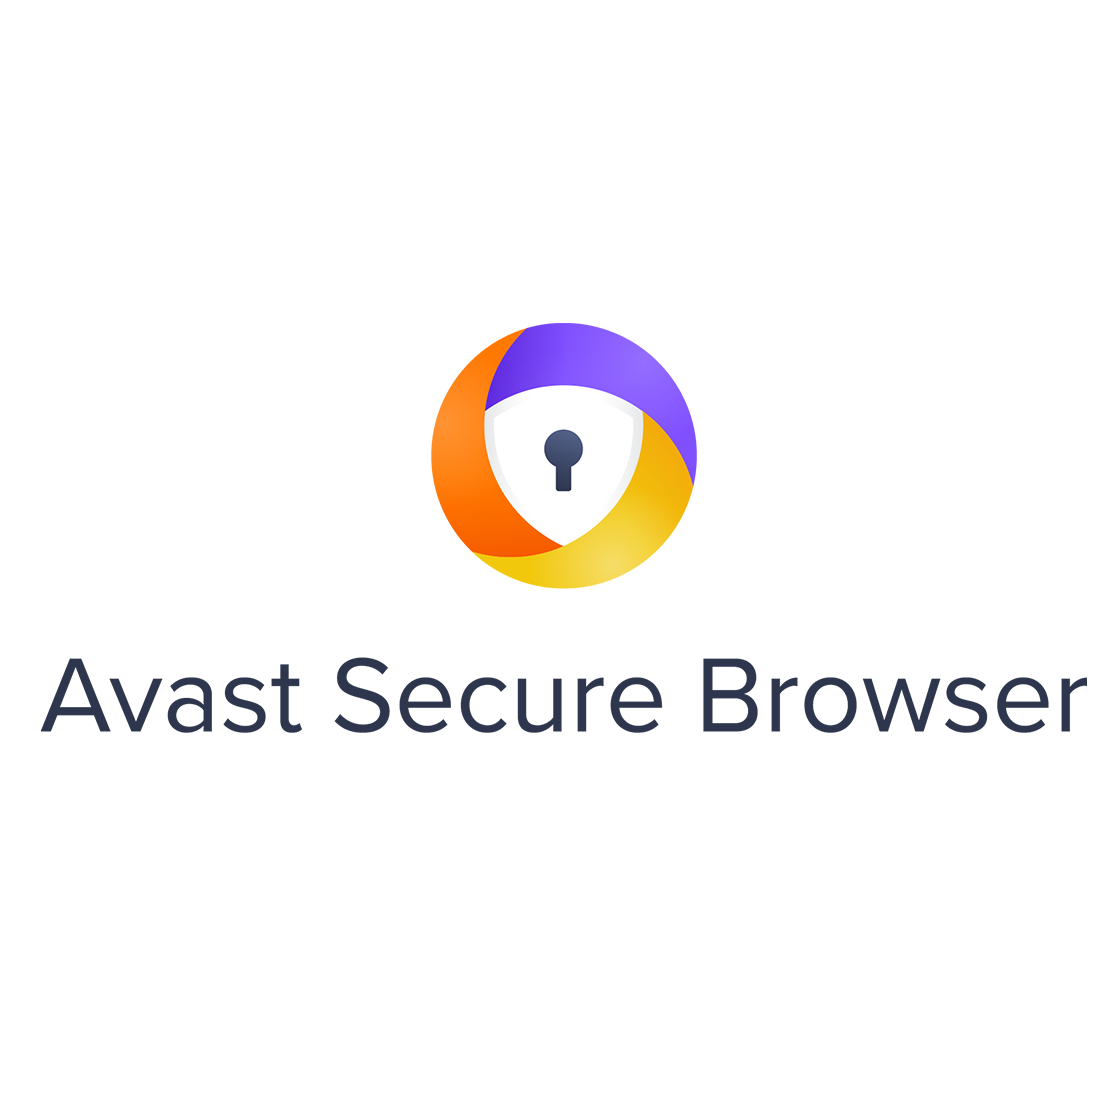 Avast ferme la filiale accusée de revendre les données de ses utilisateurs